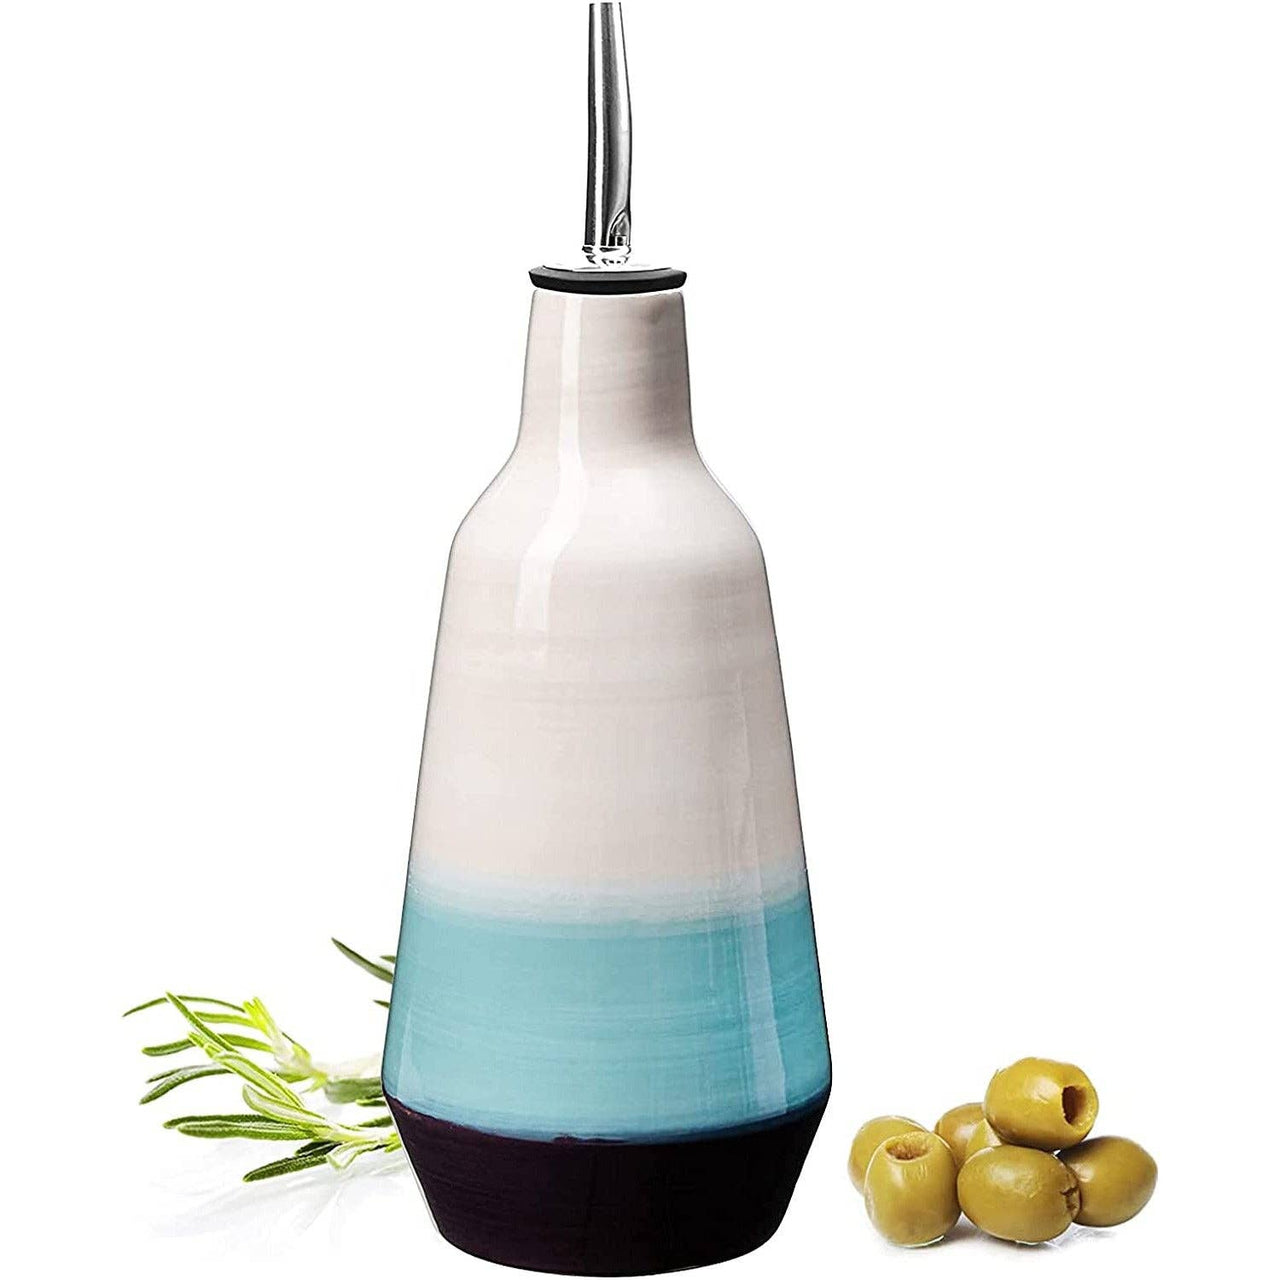 GUTE Olive Oil Dispenser Bottle - White, Blue, Black Oil  The Wine Savant / Khen Glassware   